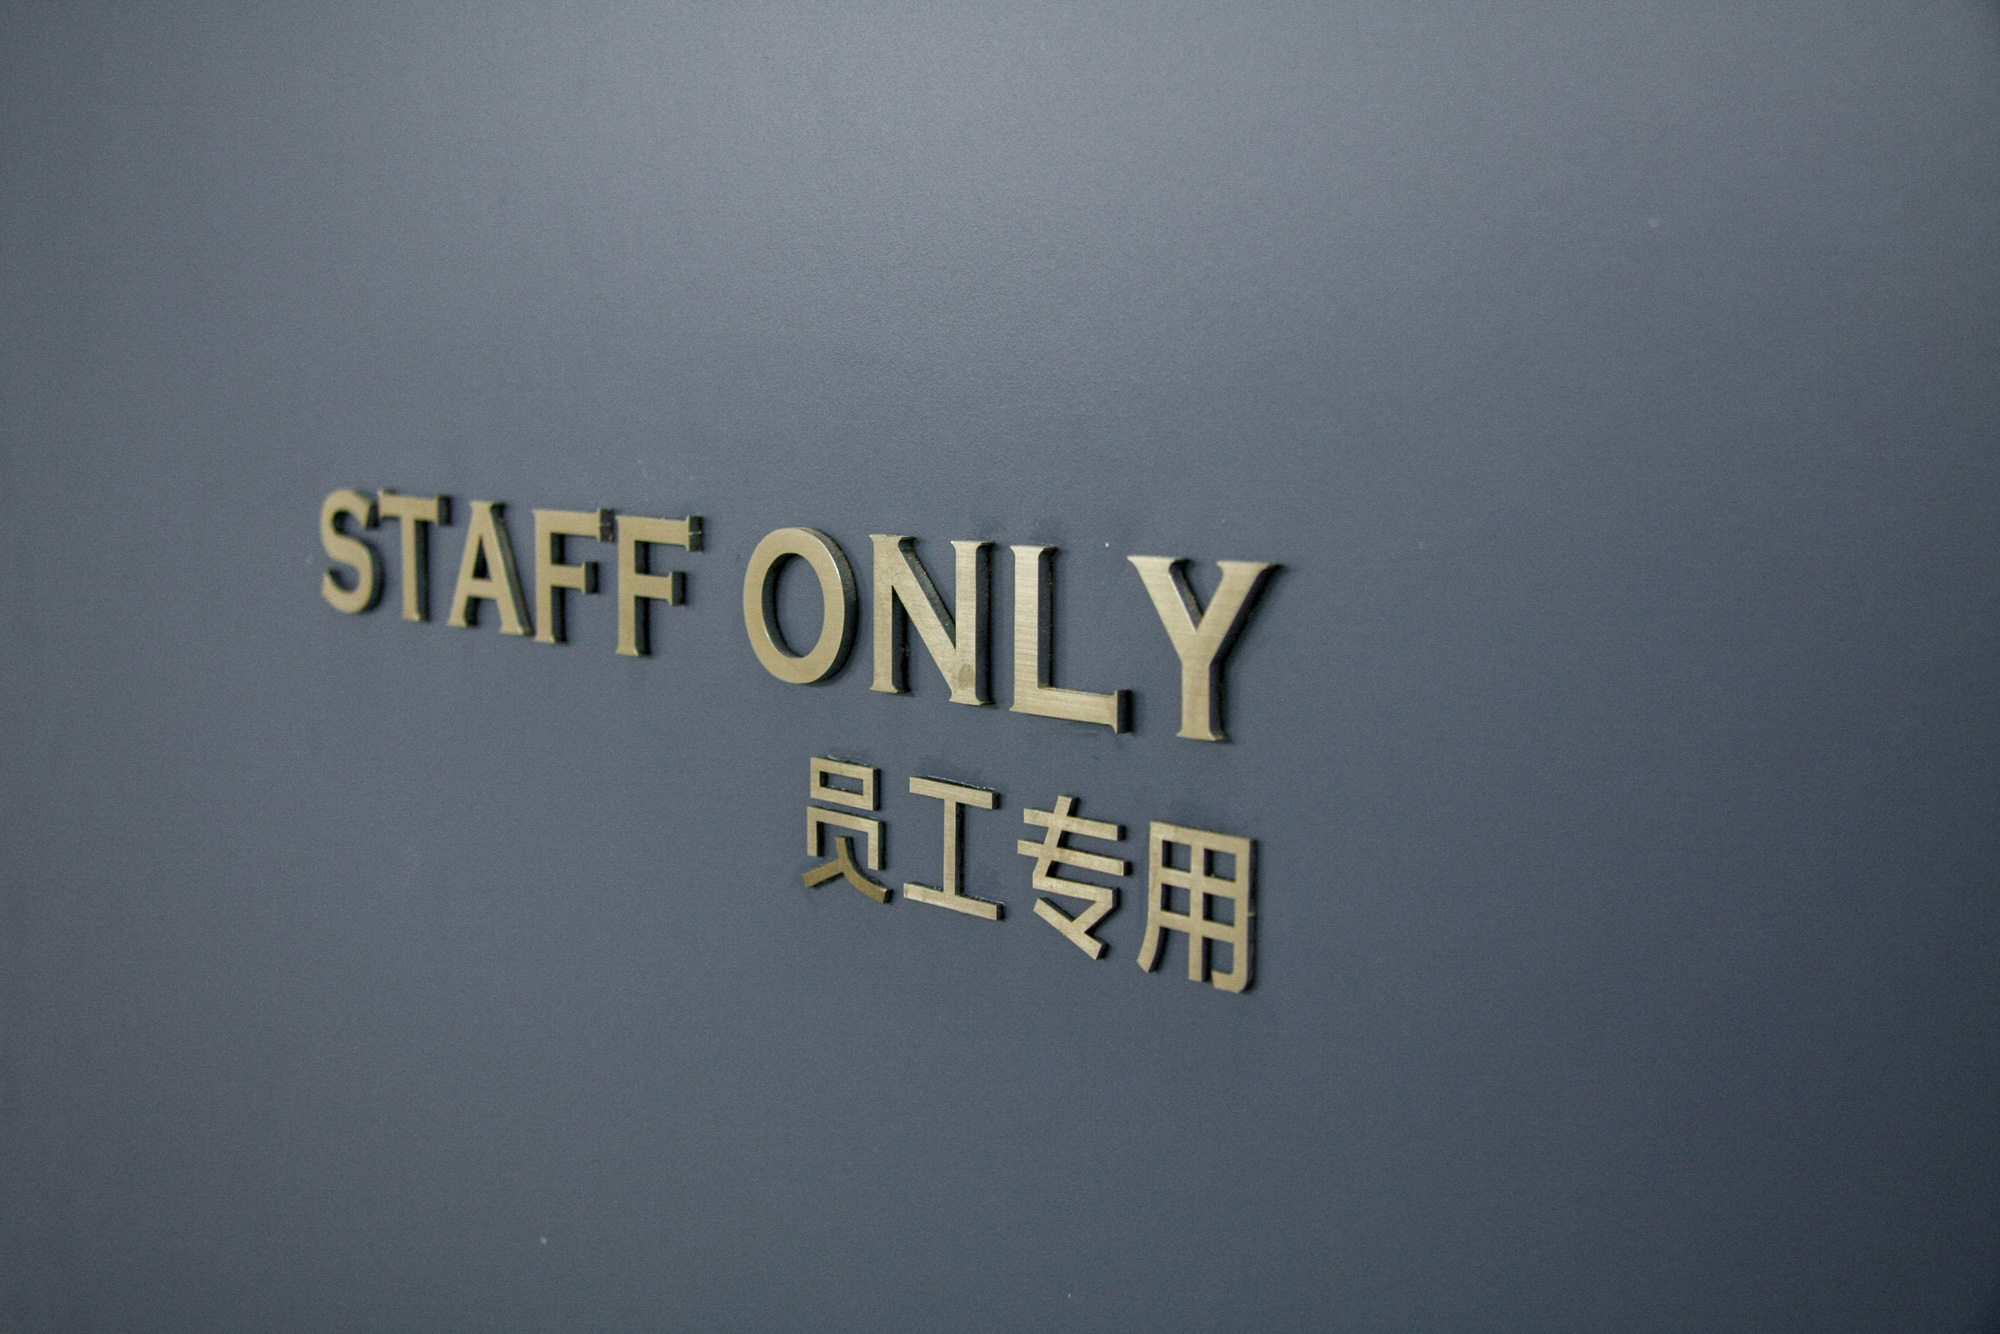 lettres sur porte indiquant staff onlu en cuivre